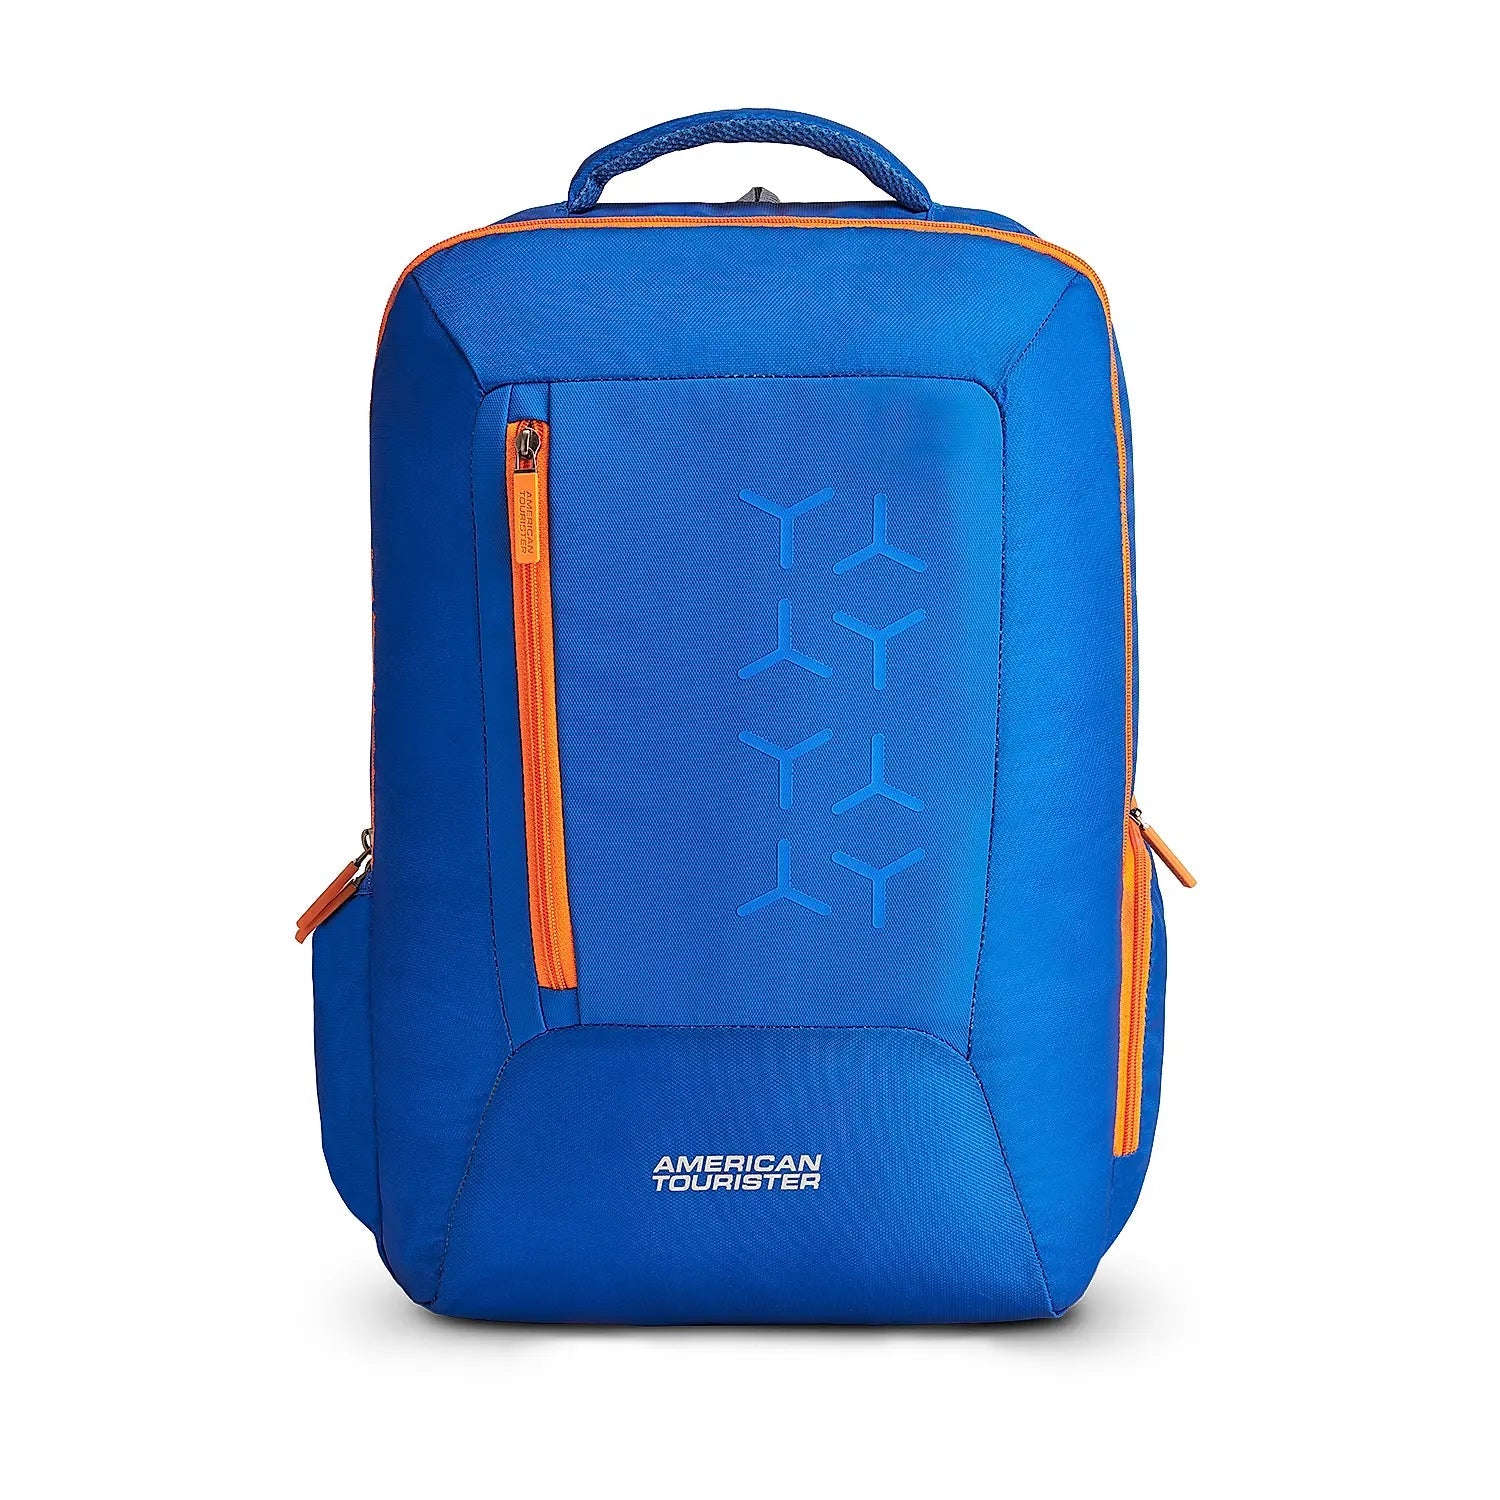 Skybags Sigma 8W Strolly 59+71 Blue Soft Luggage : Amazon.in: Fashion